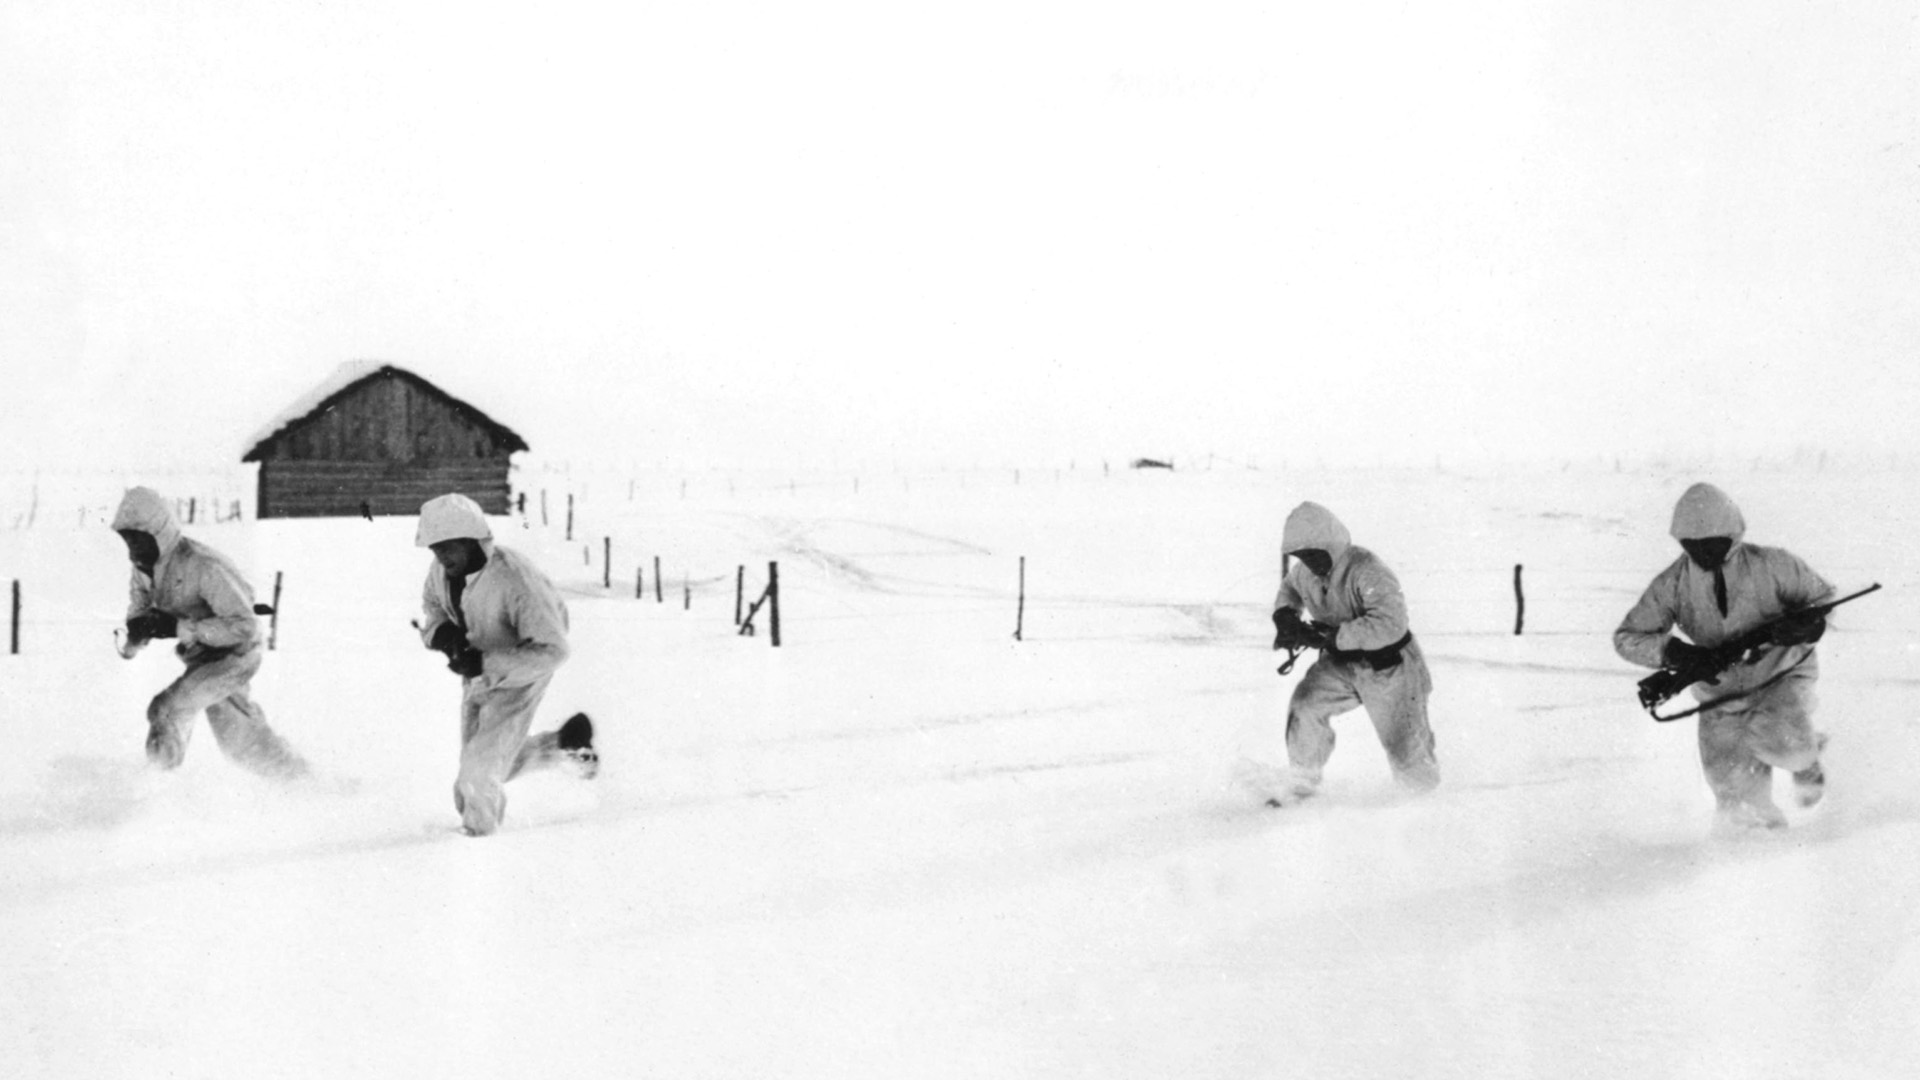 Operación Barbarroja: soldados rusos en la nieve durante el invierno de 1941/42 en el frente de batalla (APIC/Getty Images)